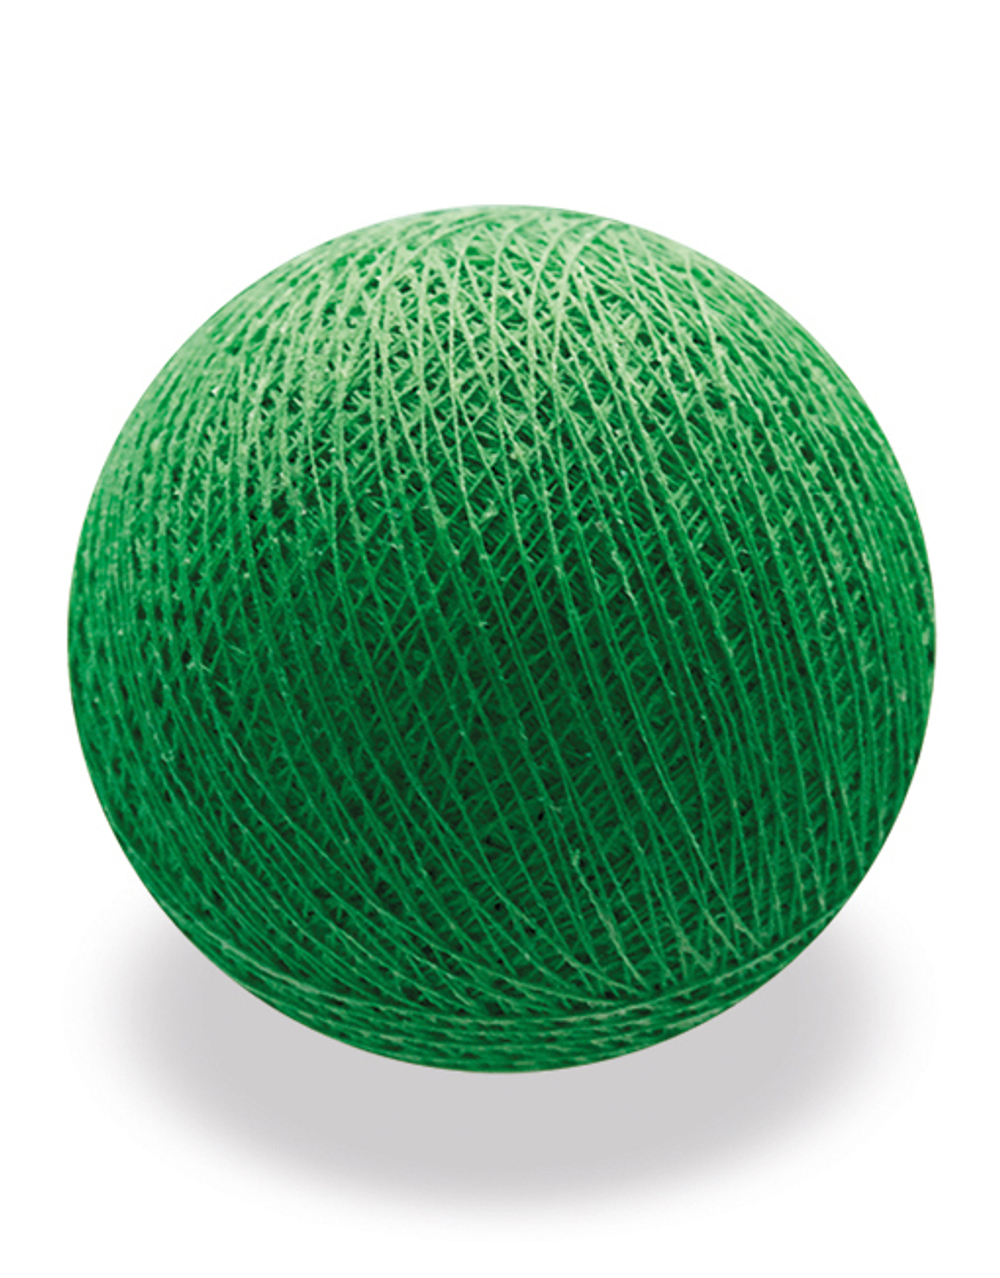 Хлопковый шарик зеленый